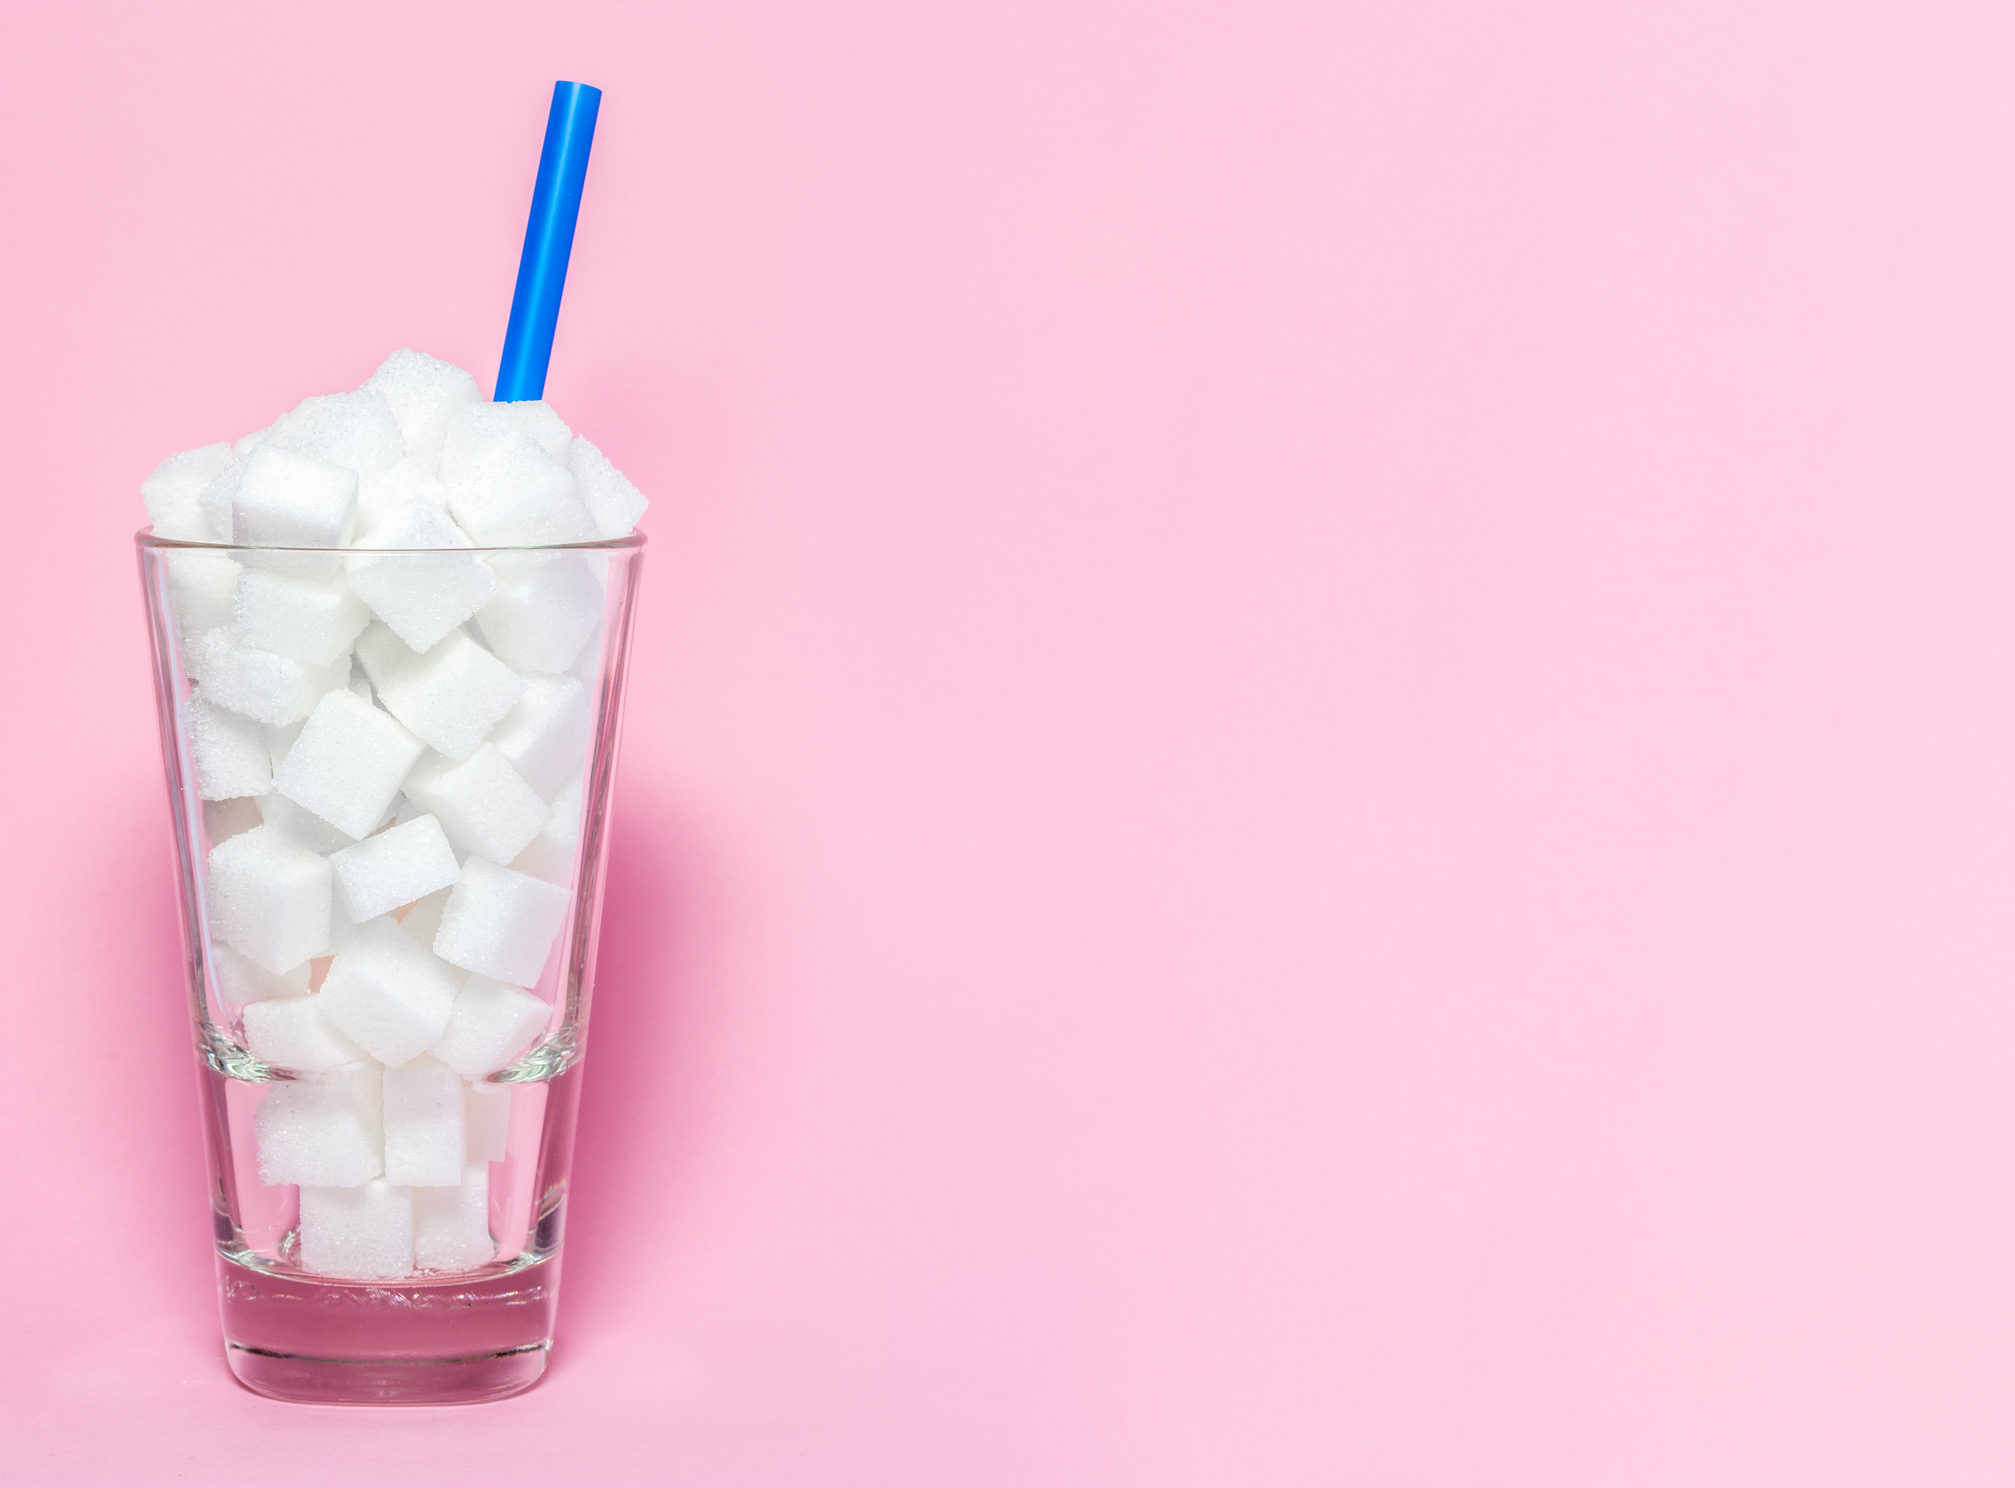 Experten fordern Halbierung von Zuckergehalt